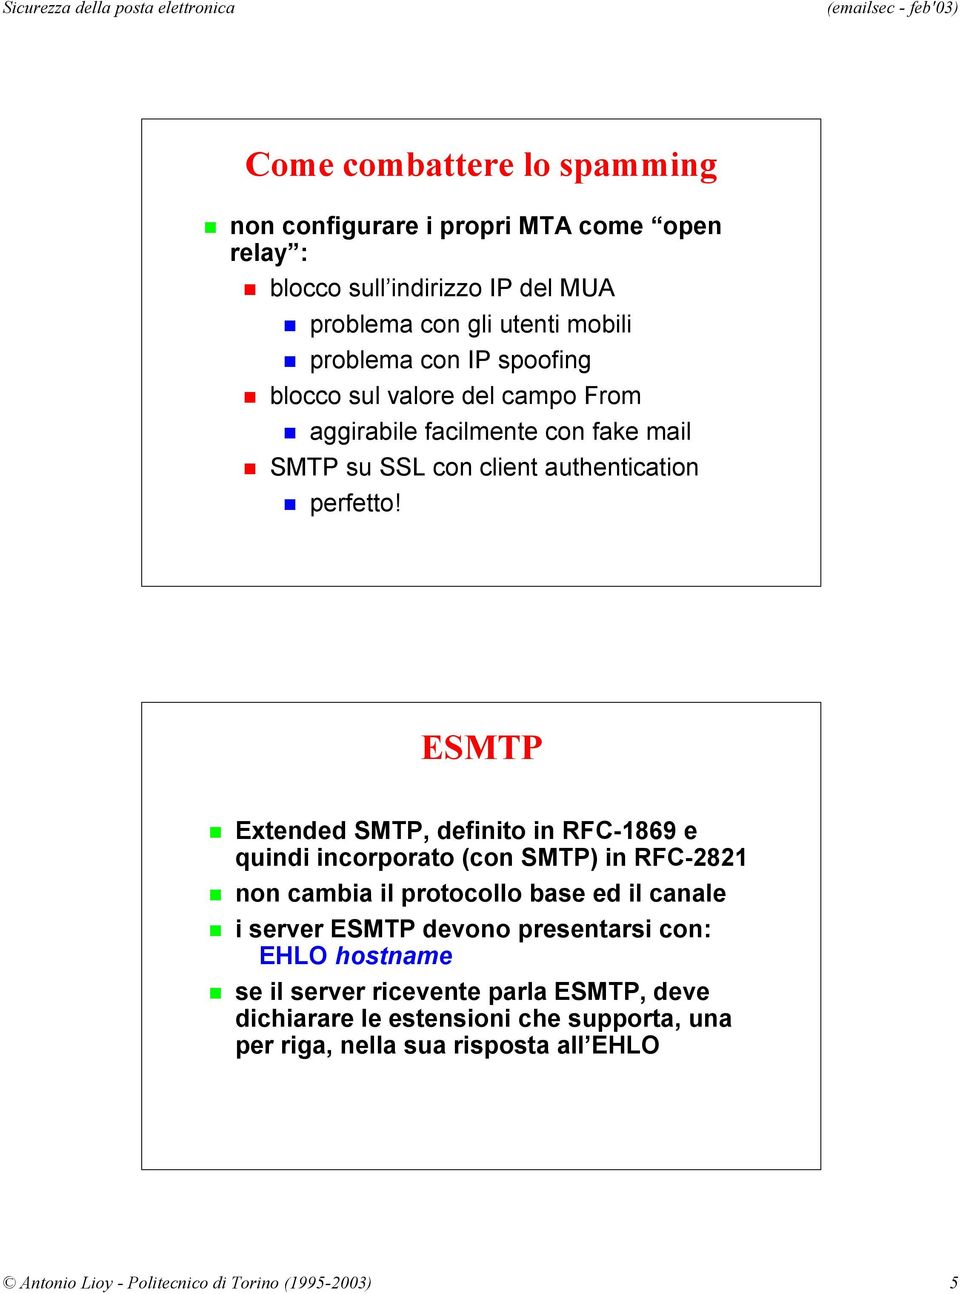 ESMTP Extended SMTP, definito in RFC-1869 e quindi incorporato (con SMTP) in RFC-2821 non cambia il protocollo base ed il canale i server ESMTP devono